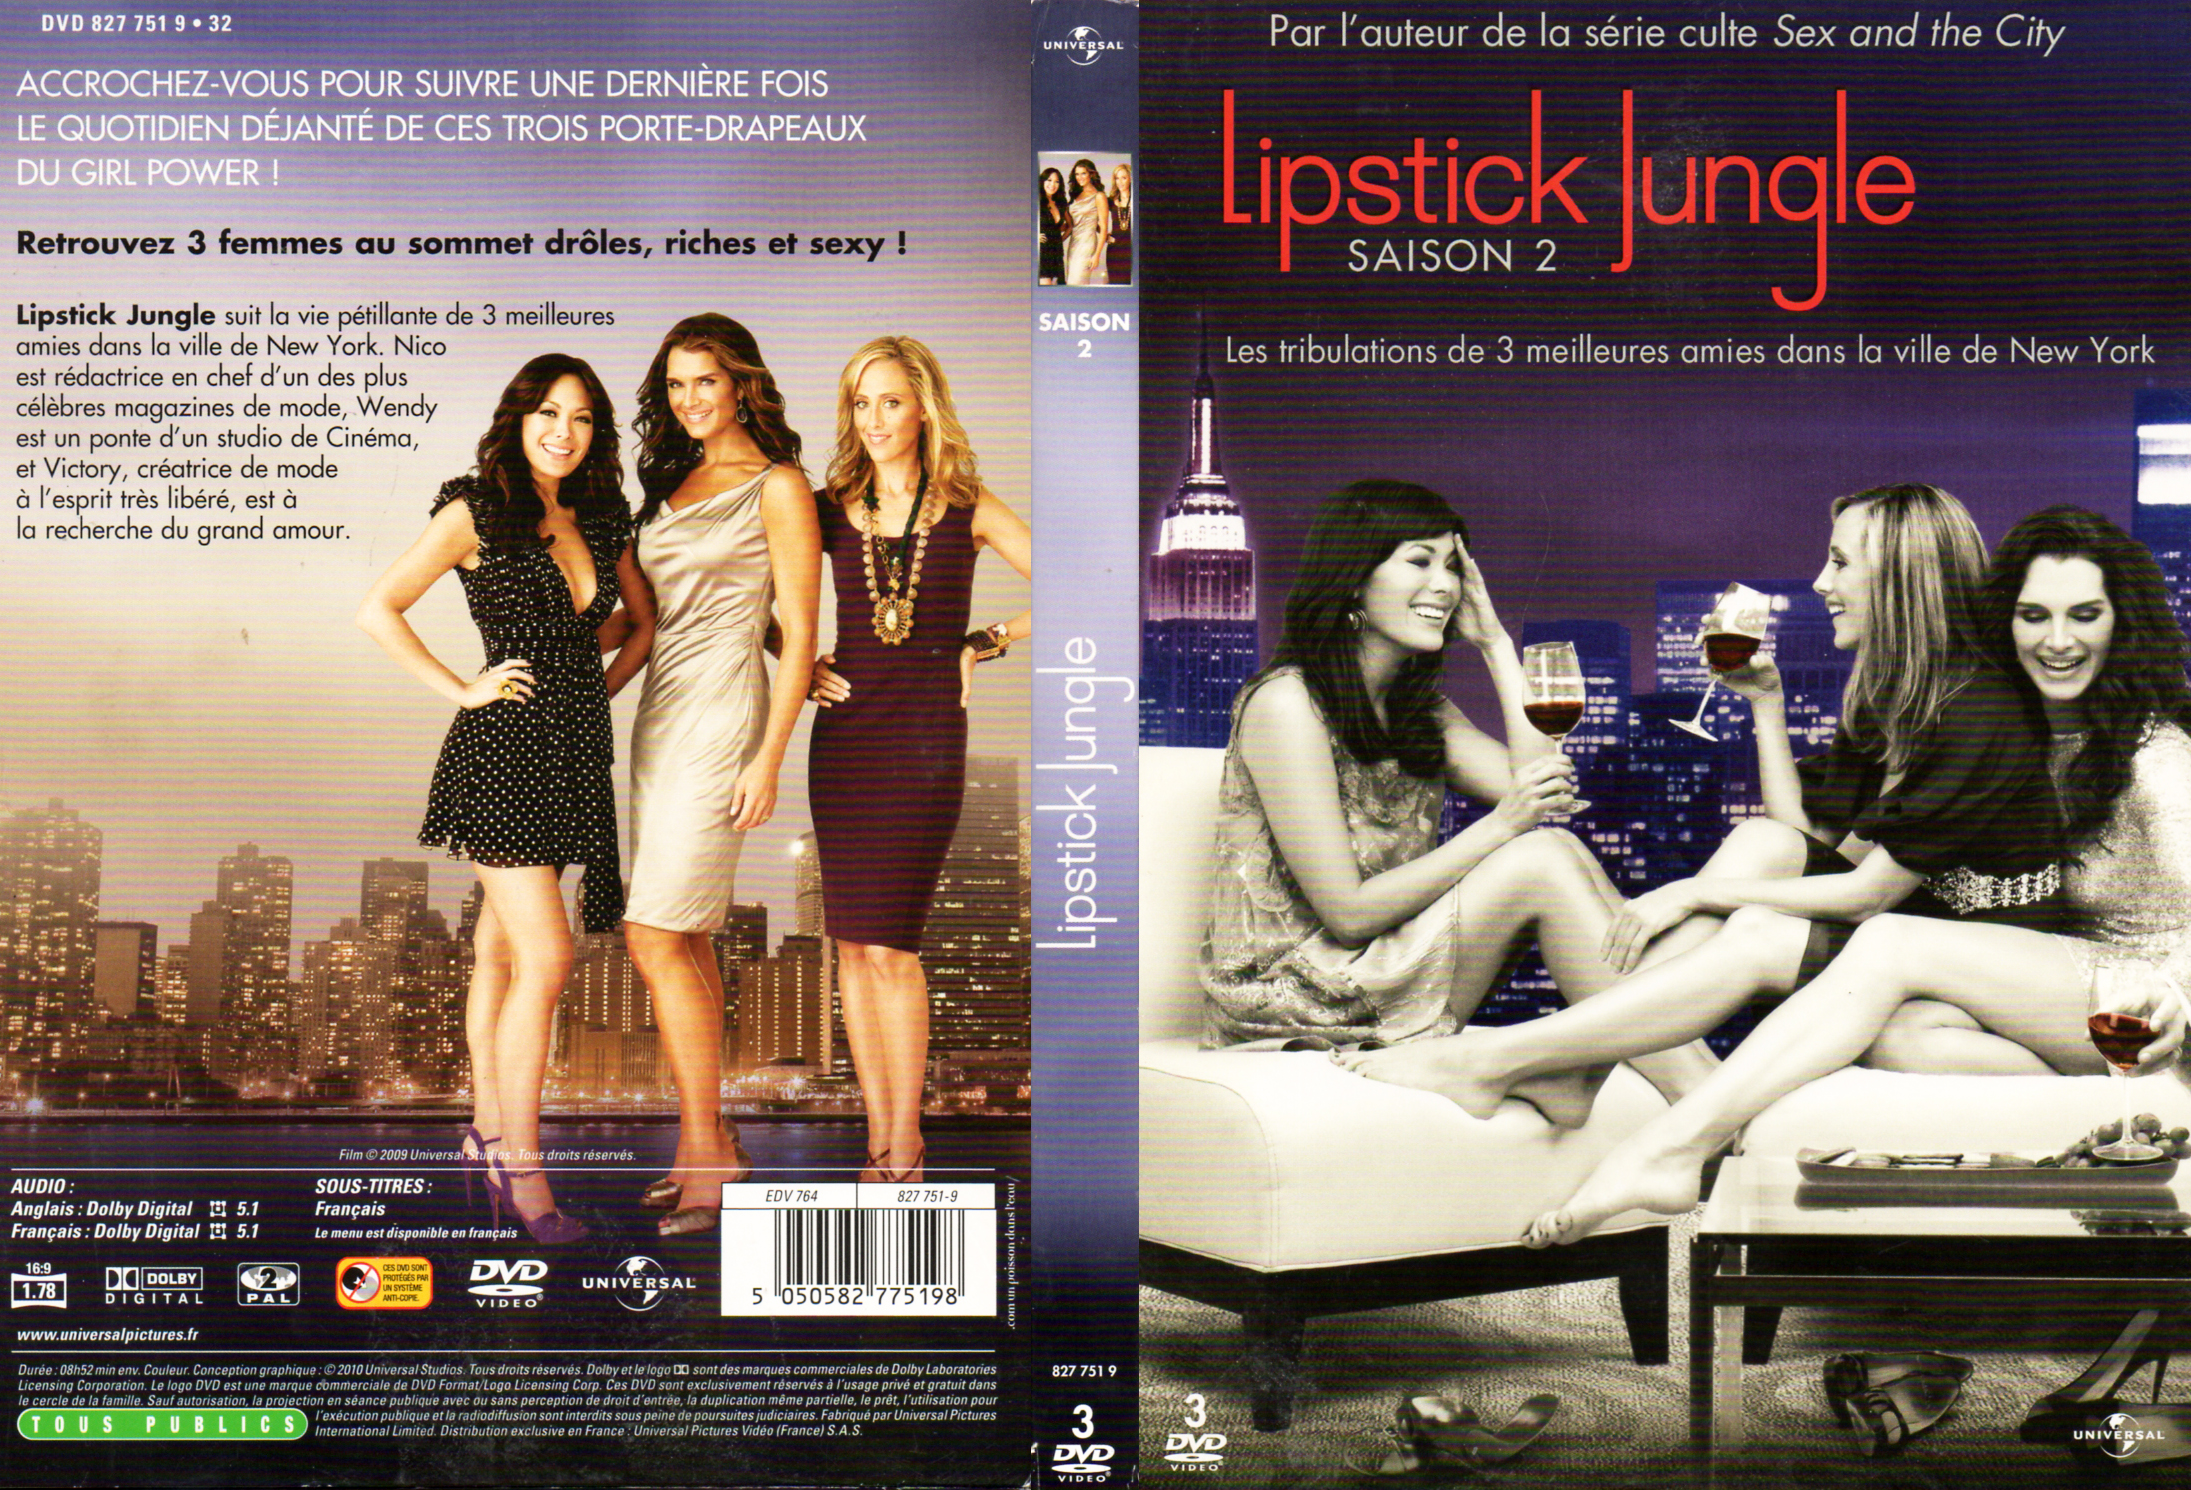 Jaquette DVD Lipstick jungle Saison 2